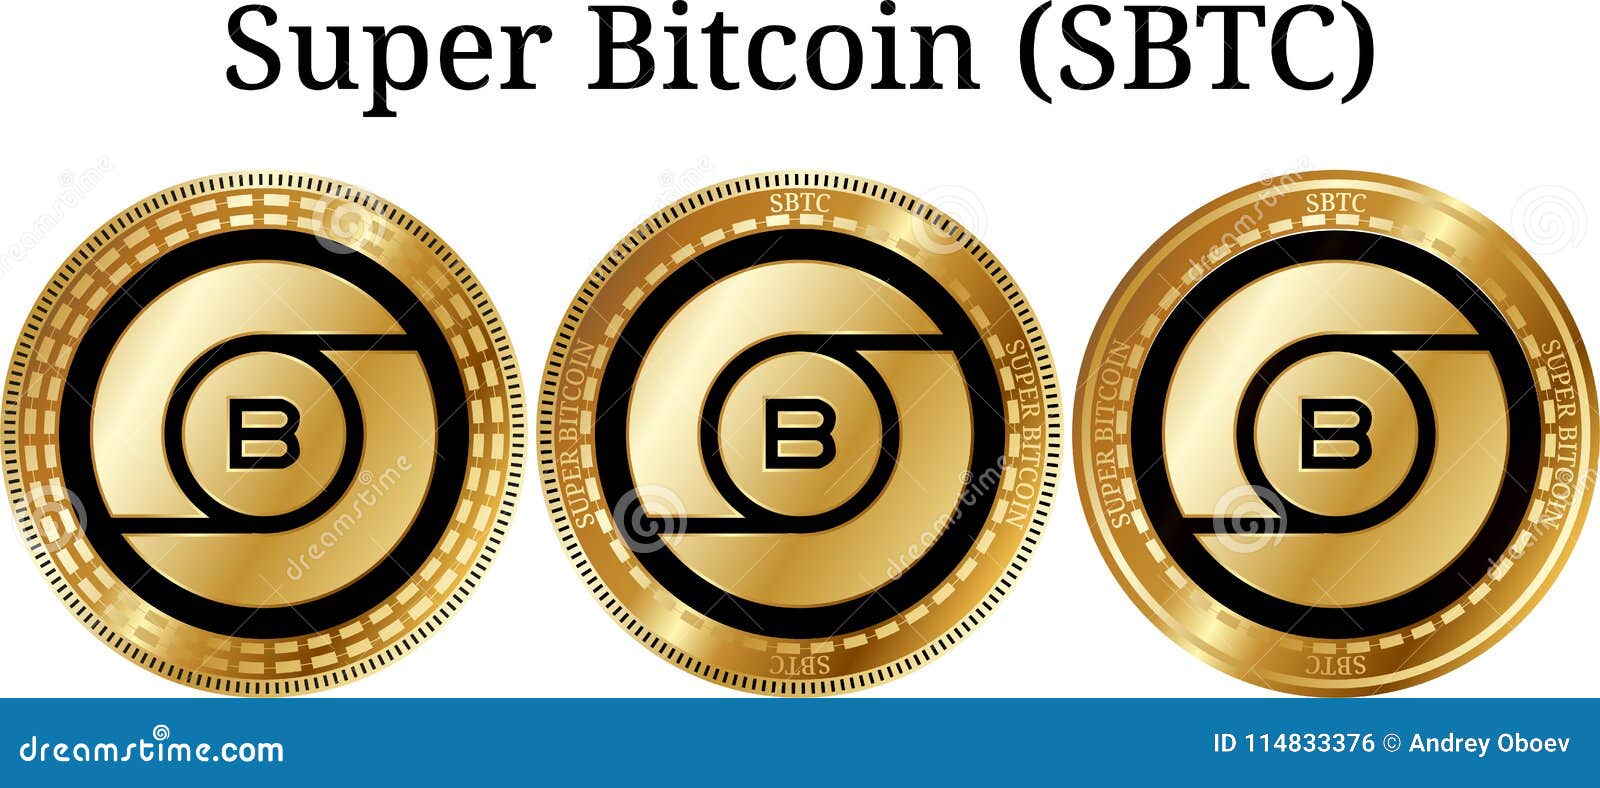 Set Of Physical Golden Coin Super Bitcoin Sbtc Stock Vector - 